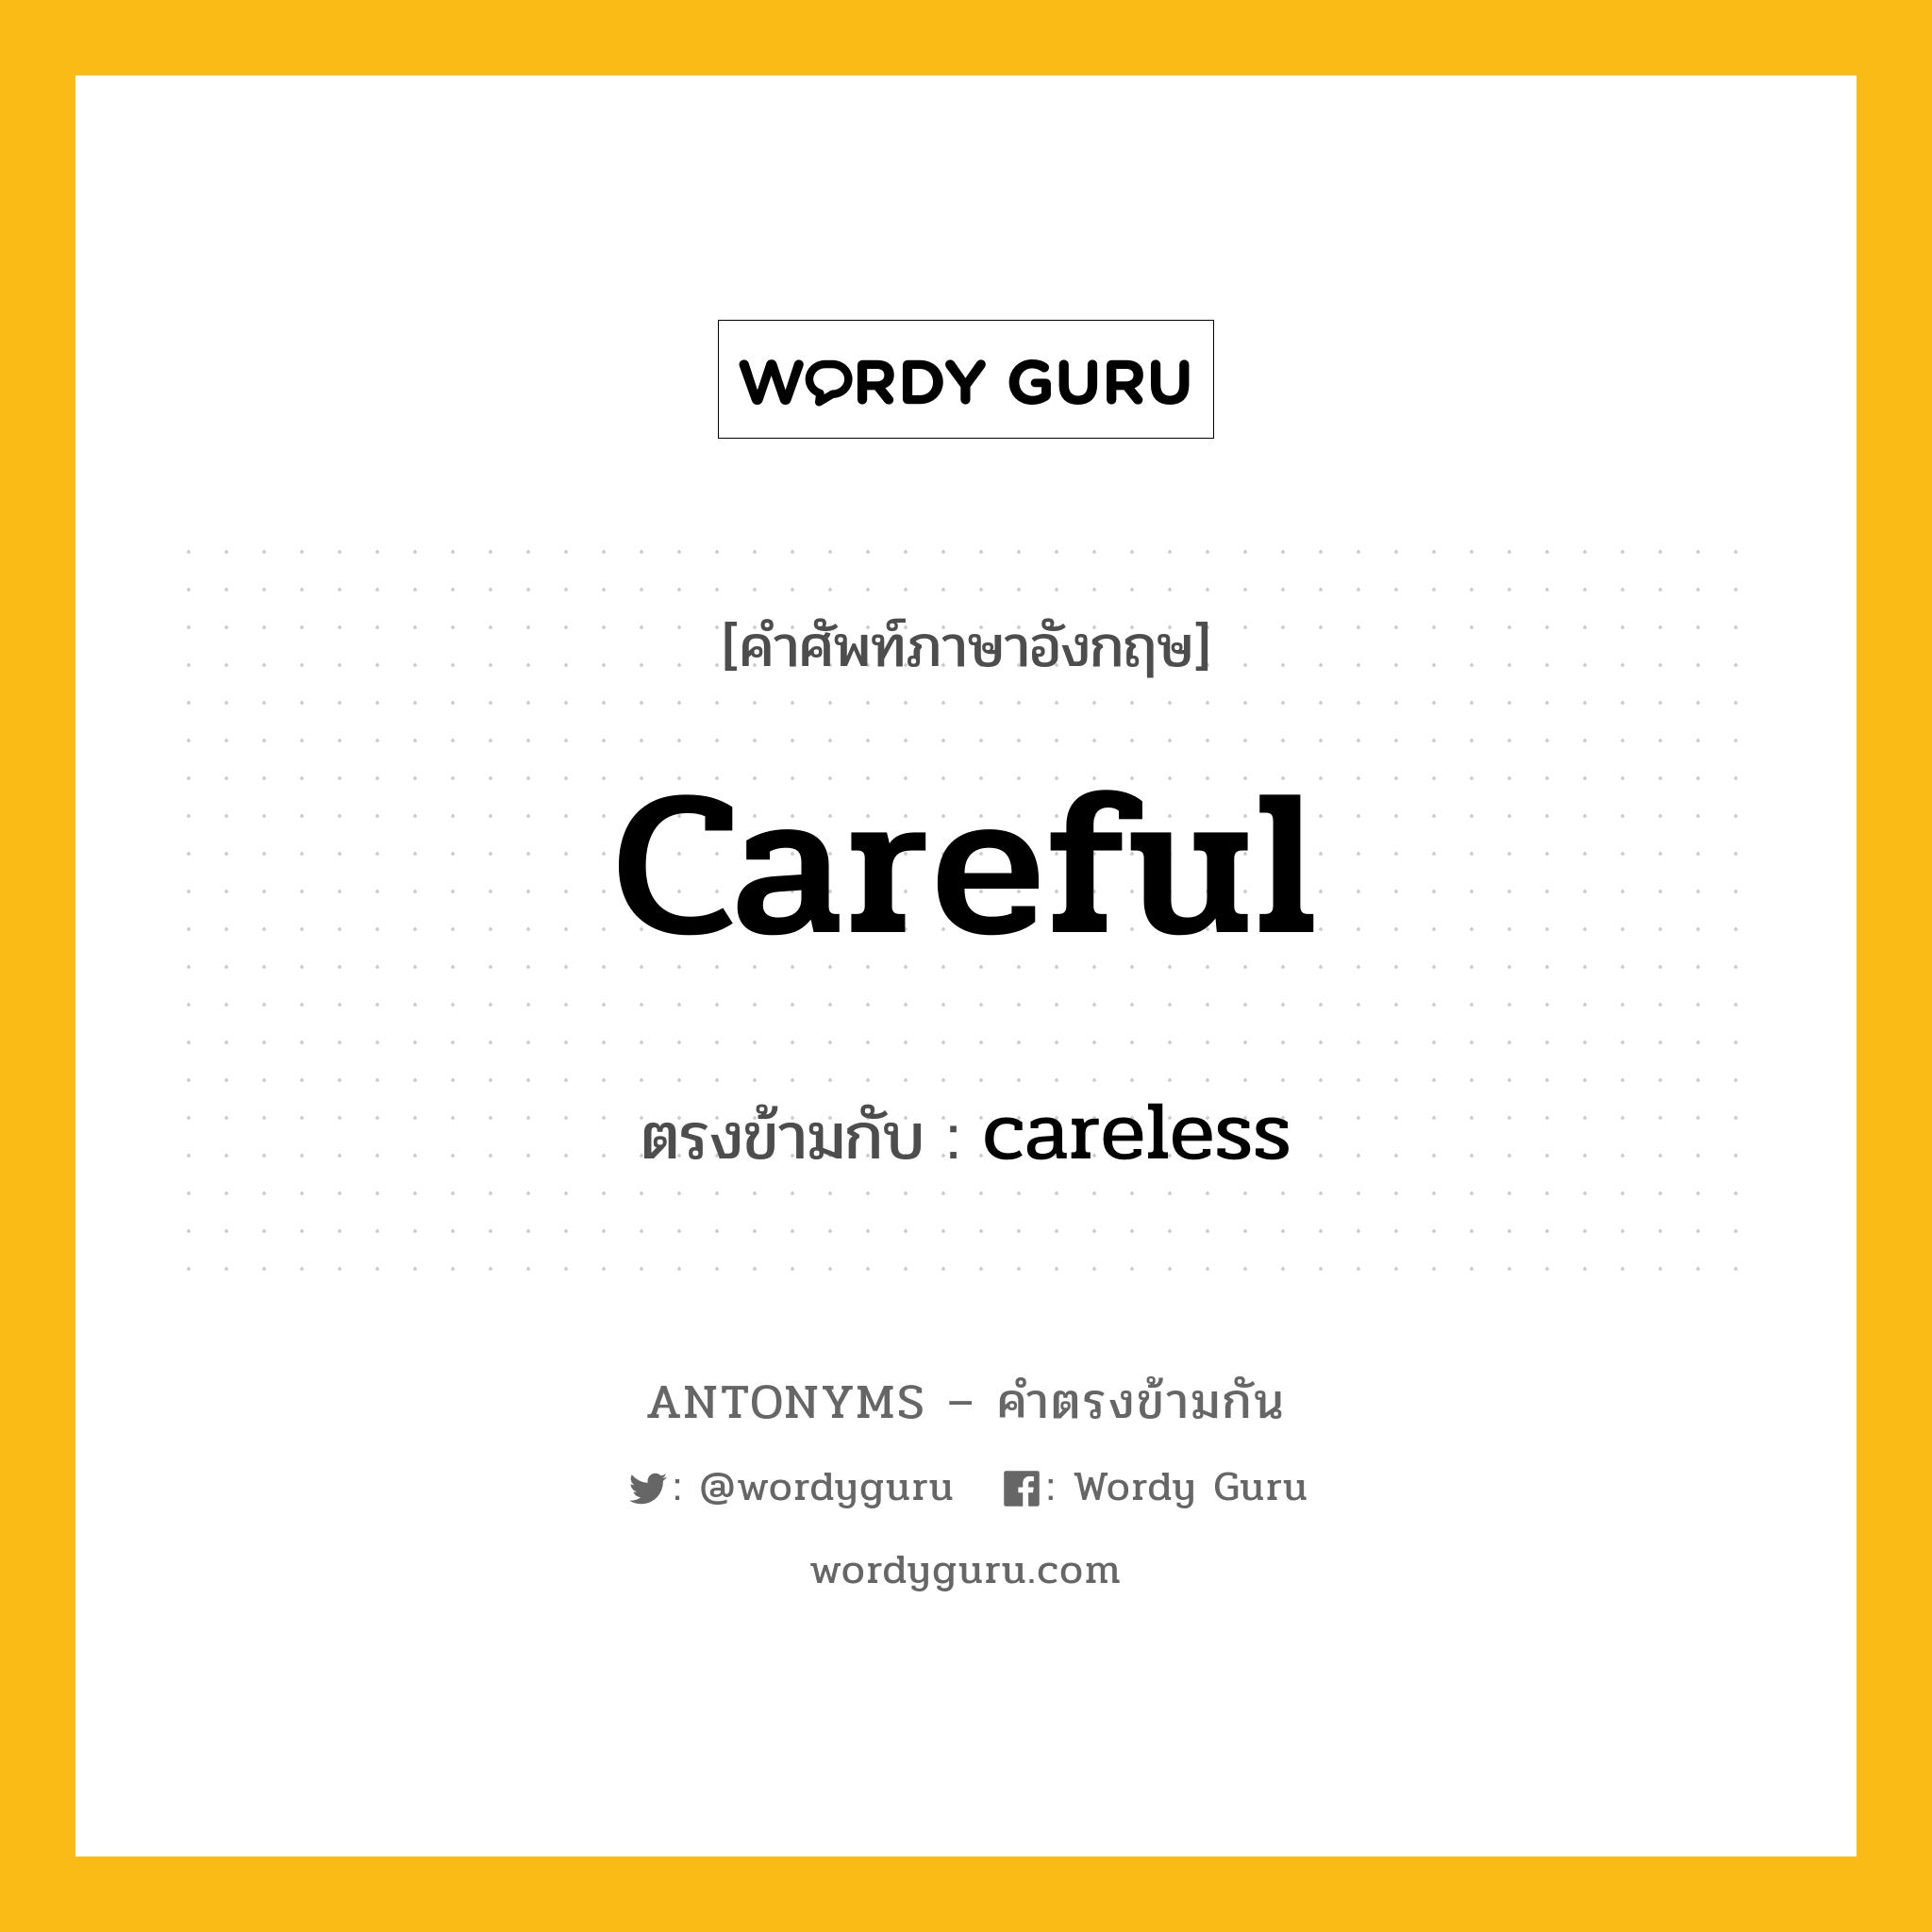 careful เป็นคำตรงข้ามกับคำไหนบ้าง?, คำศัพท์ภาษาอังกฤษ careful ตรงข้ามกับ careless หมวด careless